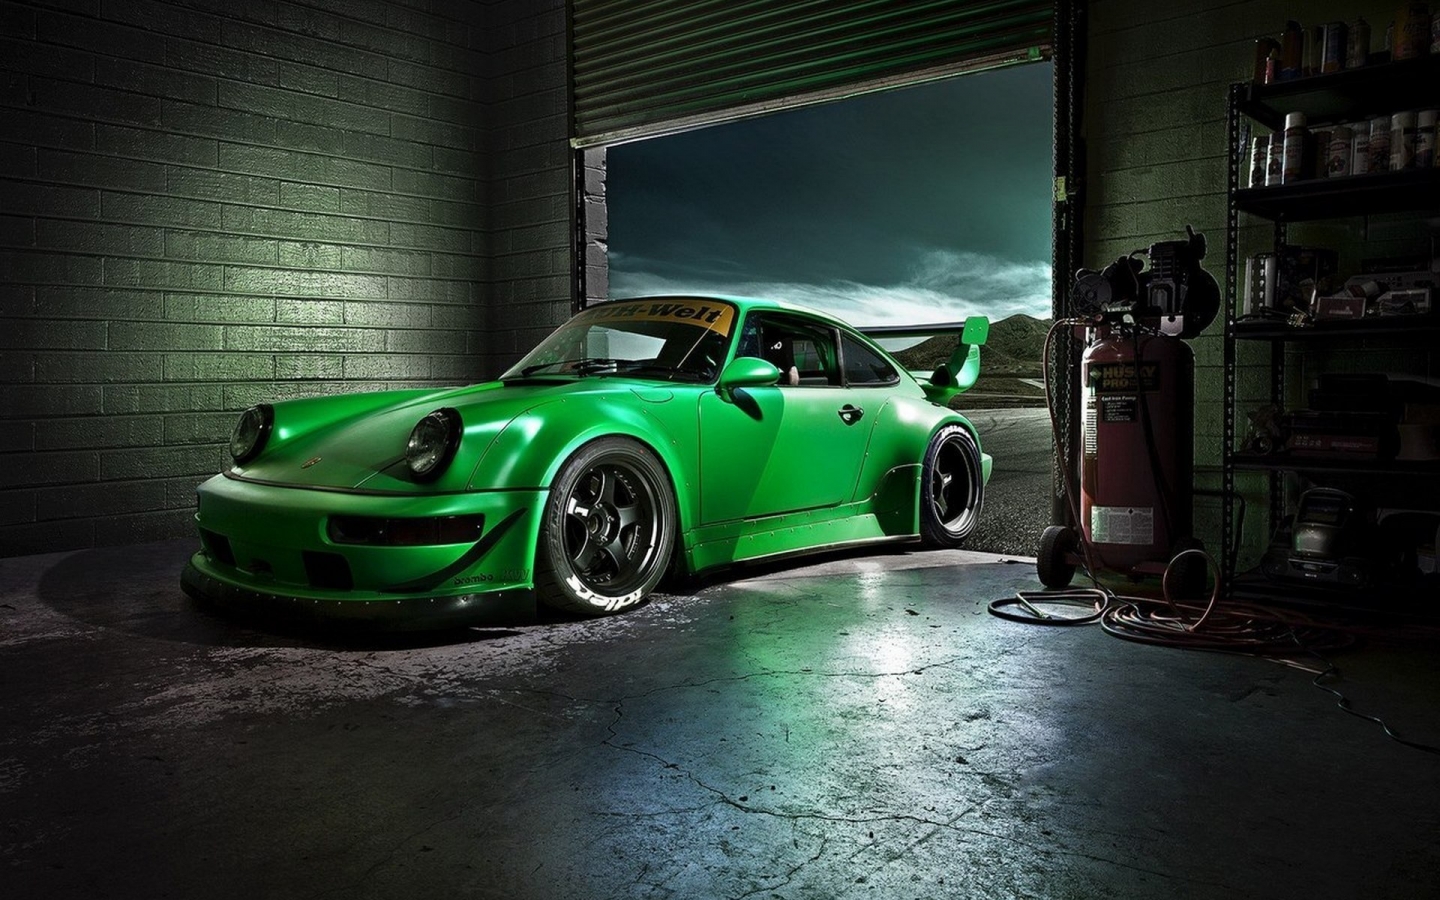 Green Porsche Carrera for 1440 x 900 widescreen resolution